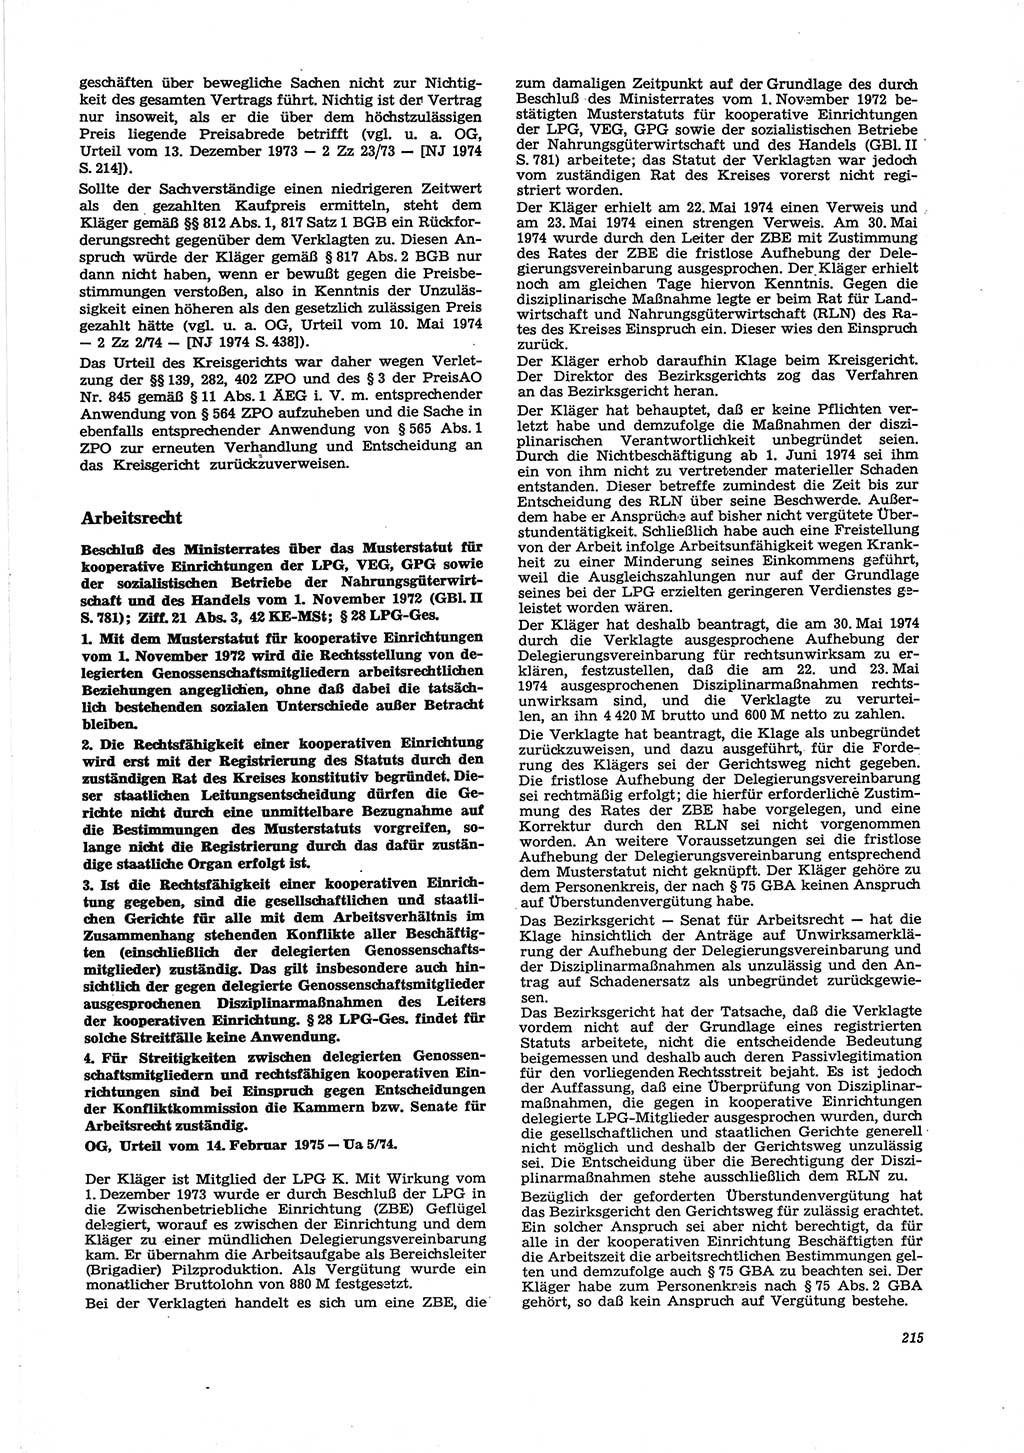 Neue Justiz (NJ), Zeitschrift für Recht und Rechtswissenschaft [Deutsche Demokratische Republik (DDR)], 29. Jahrgang 1975, Seite 215 (NJ DDR 1975, S. 215)